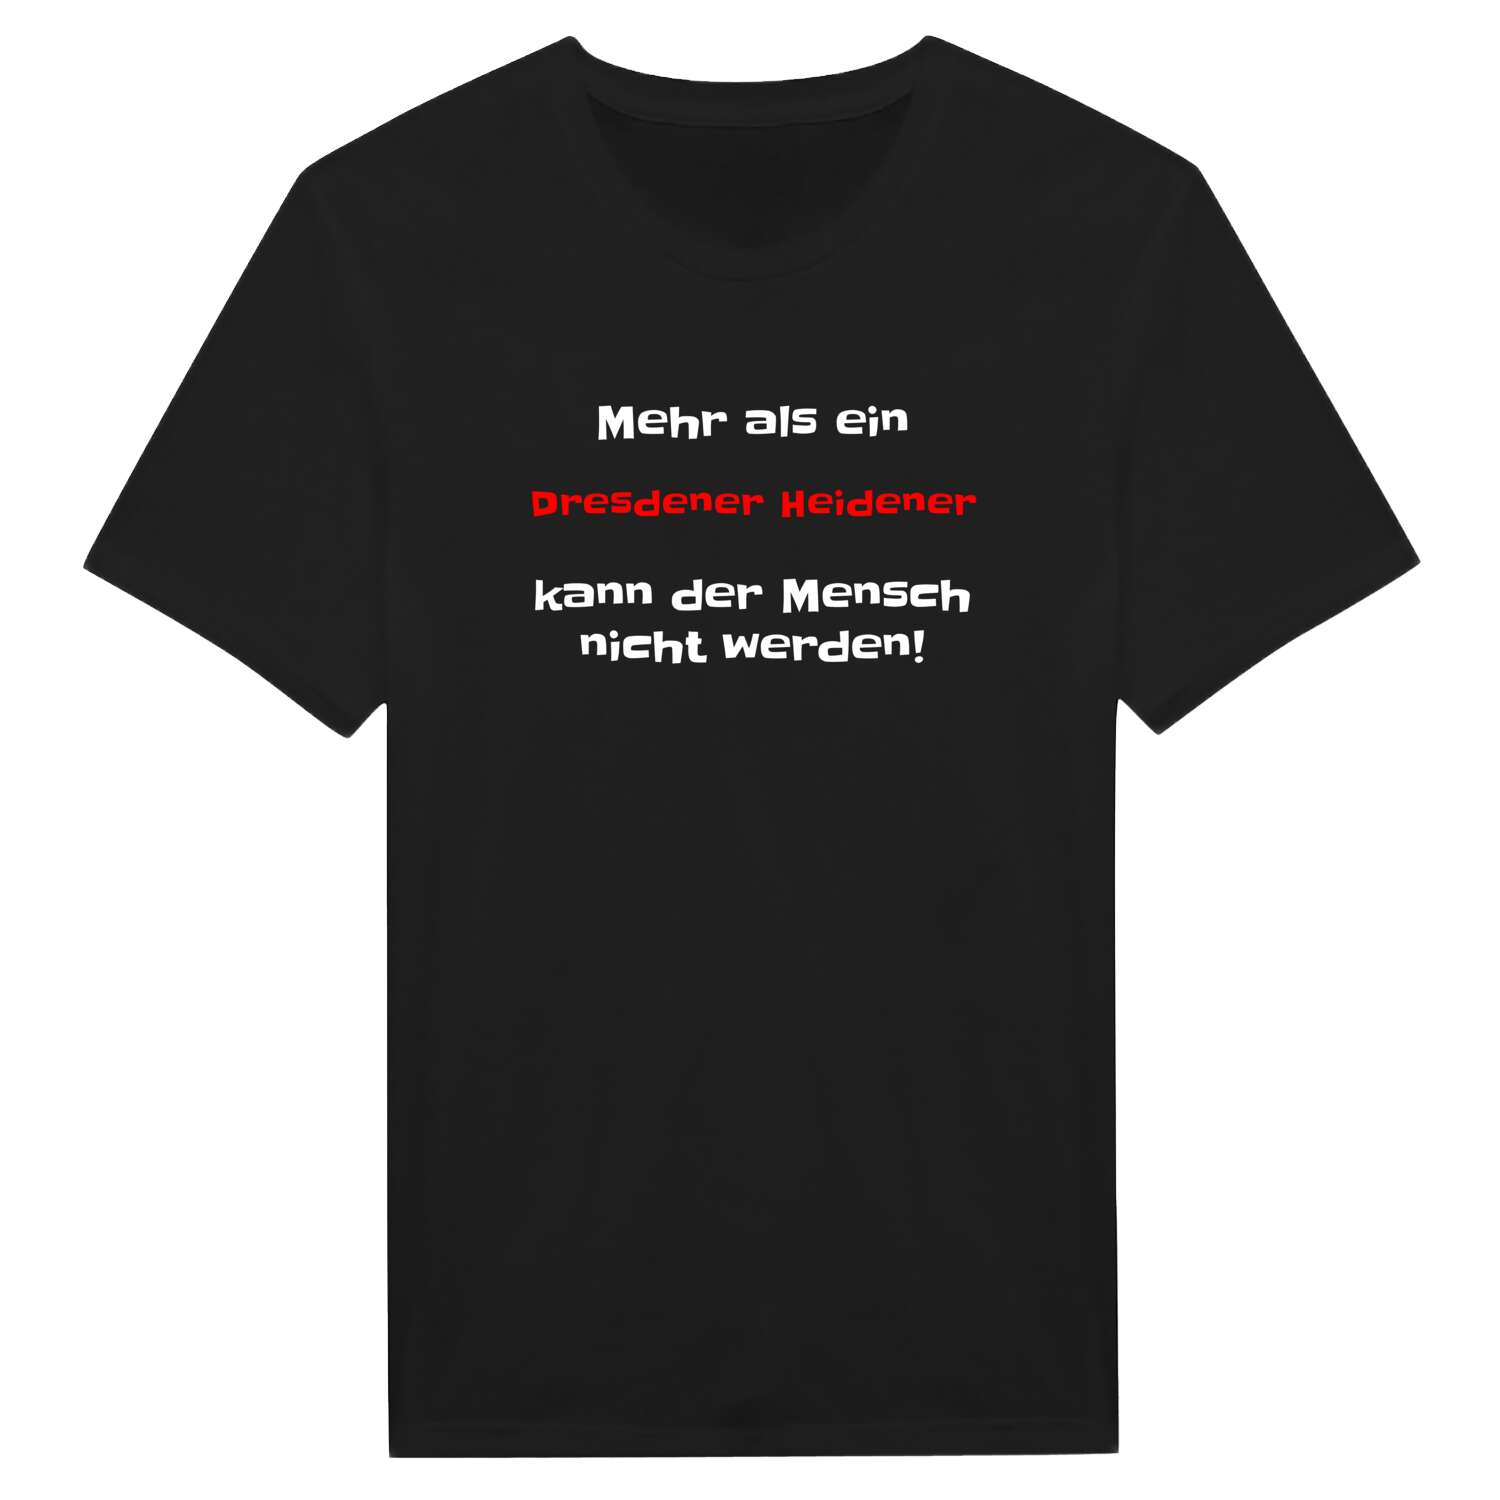 Dresdener Heide T-Shirt »Mehr als ein«